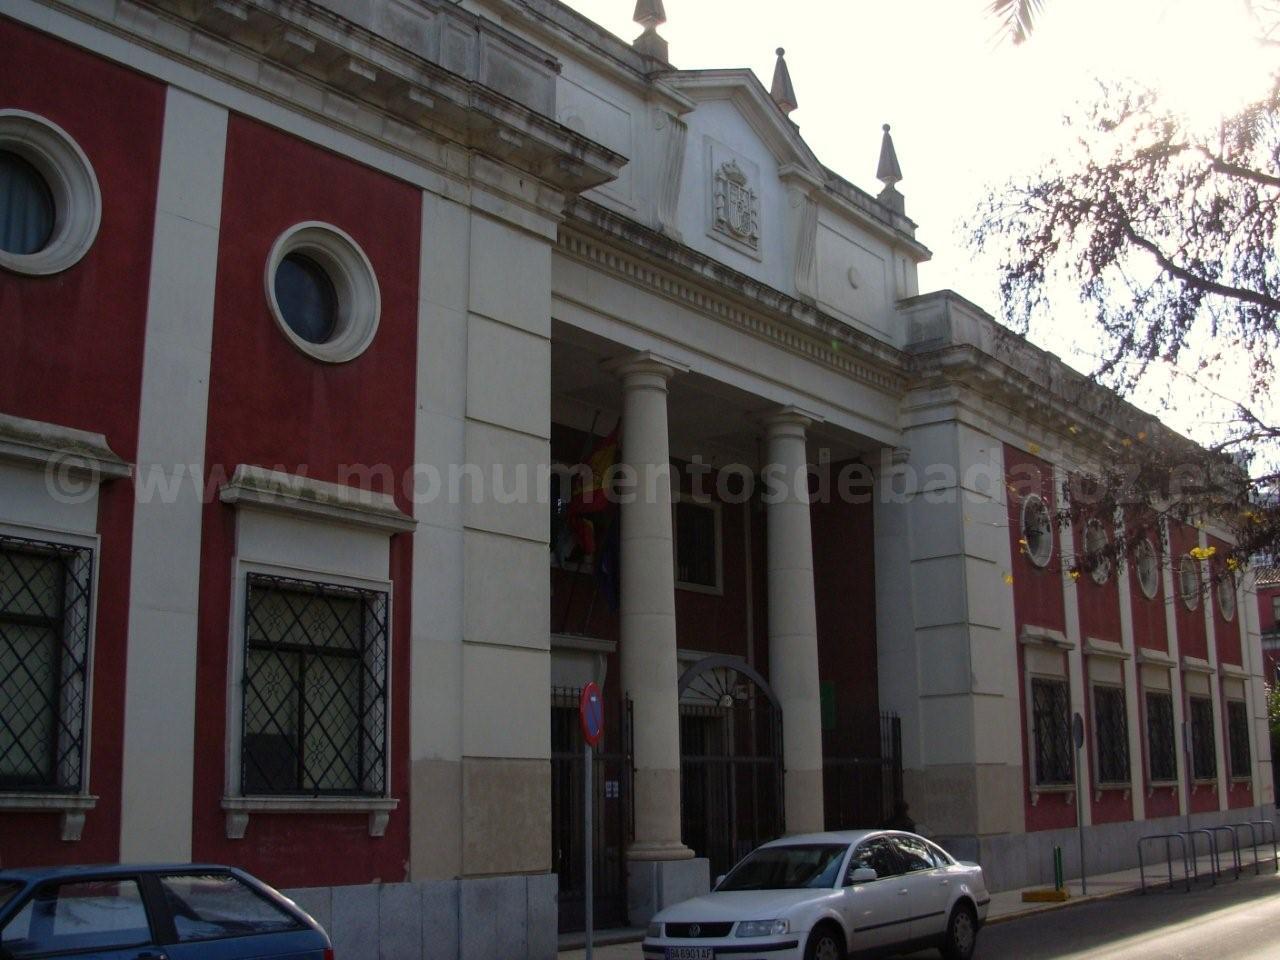 Historicismo en Badajoz: IES Zurbarn